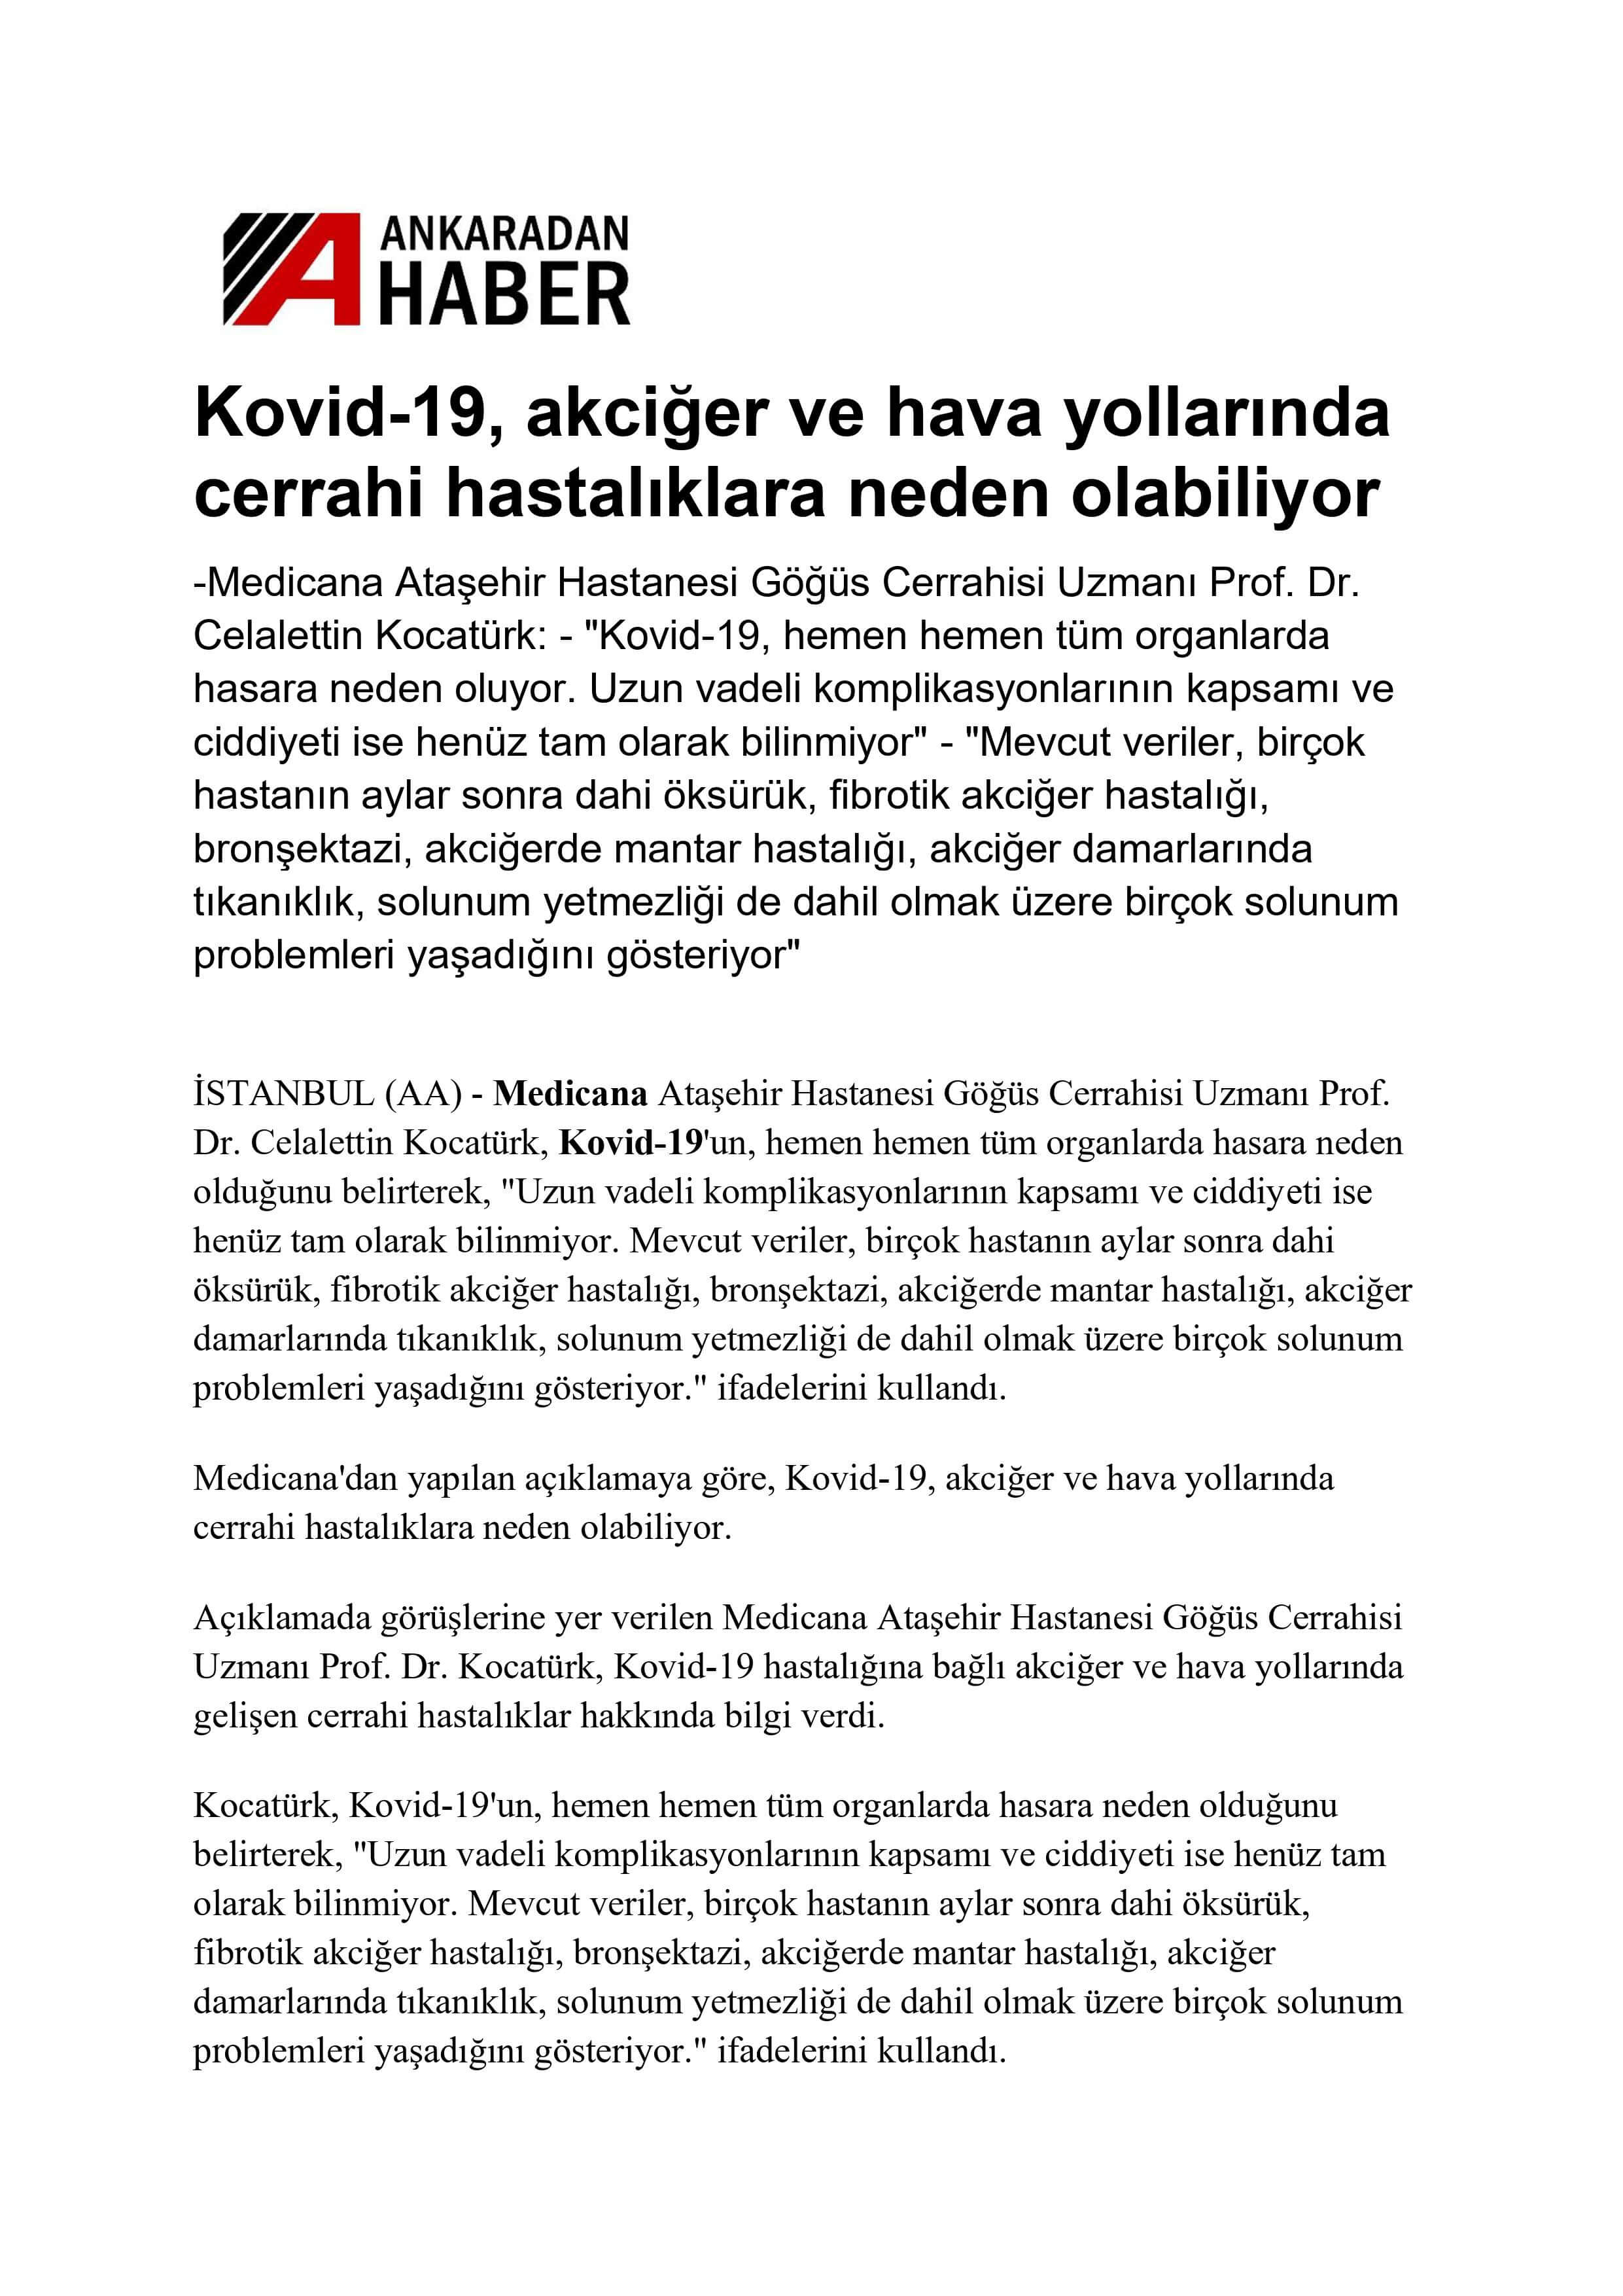 Kovid-19, akciğer ve hava yollarında cerrahi hastalıklara neden olabiliyor 15.09.2021 Ankaradan Haber 